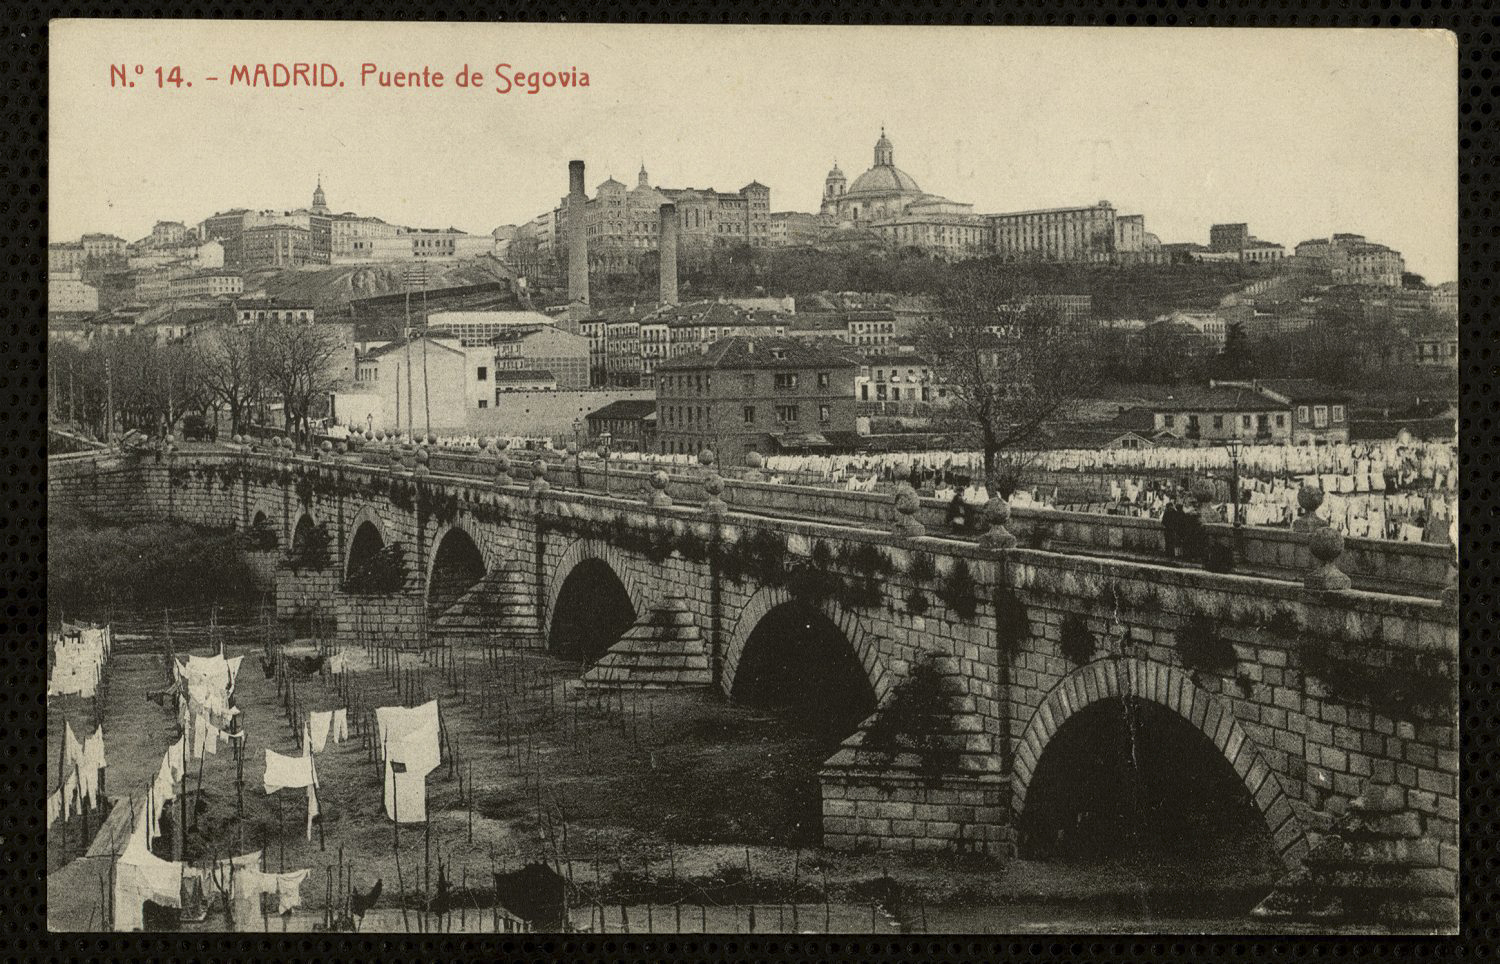 El Puente de Segovia, con las sbanas de las lavanderas tendidas.